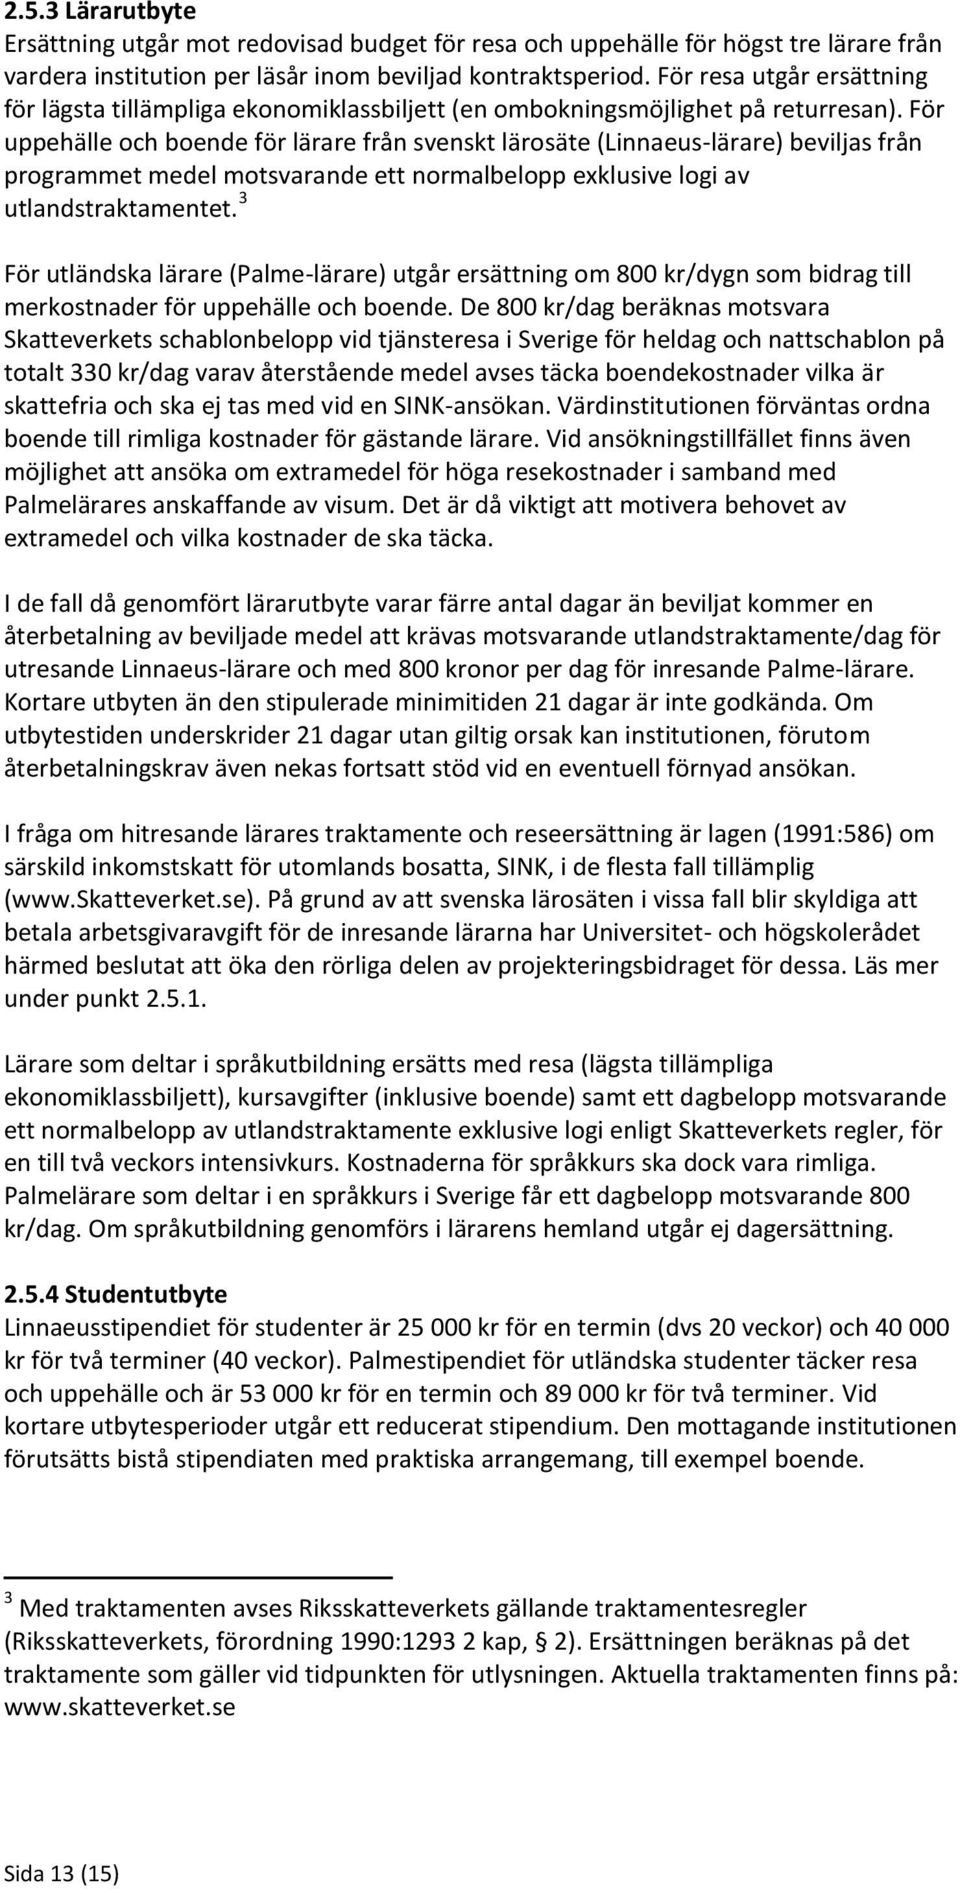 För uppehälle och boende för lärare från svenskt lärosäte (Linnaeus-lärare) beviljas från programmet medel motsvarande ett normalbelopp exklusive logi av utlandstraktamentet.